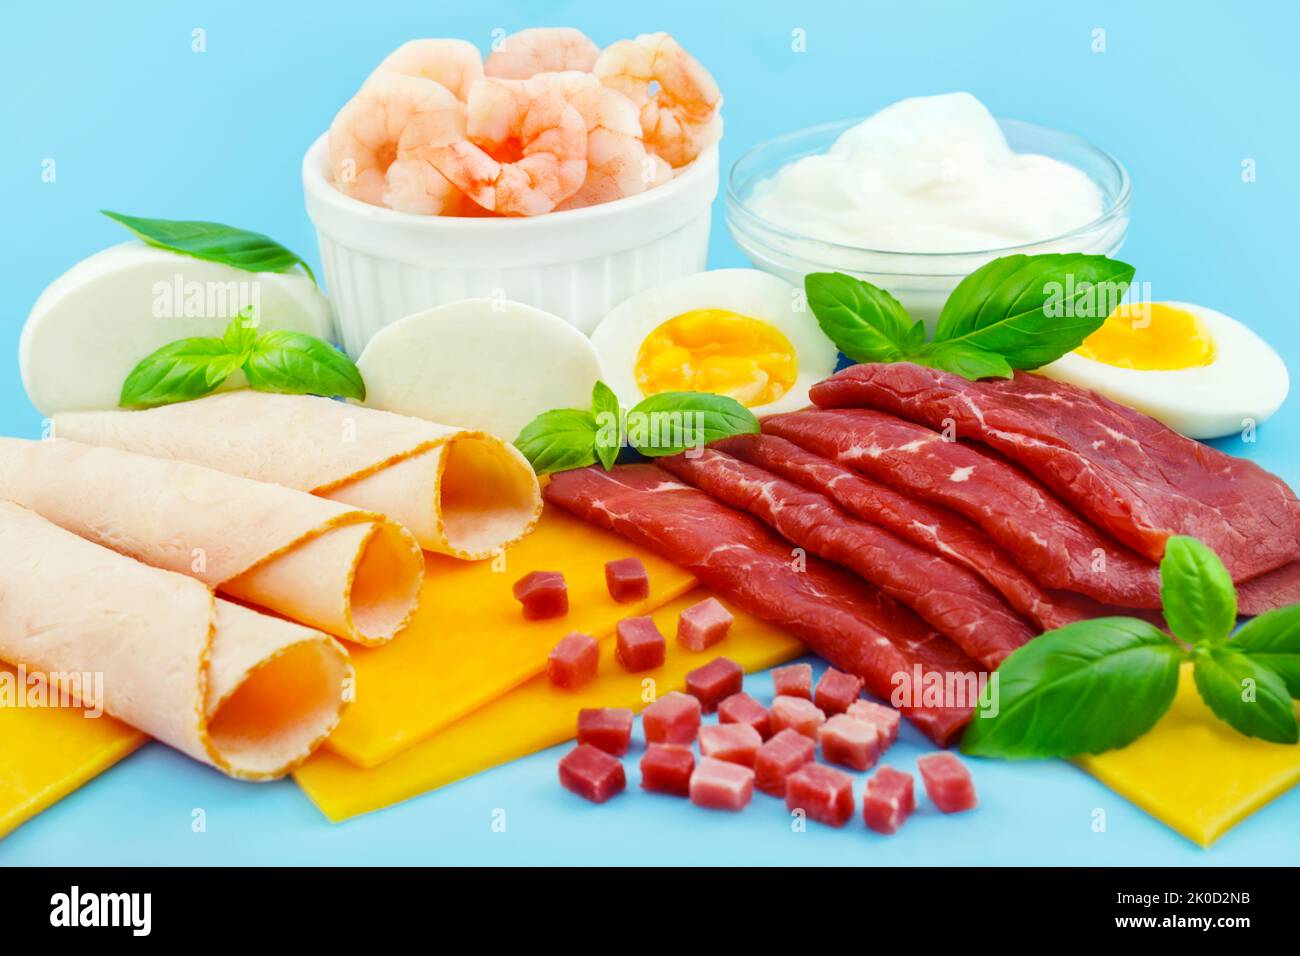 Proteinreiche Ernährung mit Fleisch, Käse, Ei, Joghurt und Shrimps auf blauem Hintergrund Stock Photo